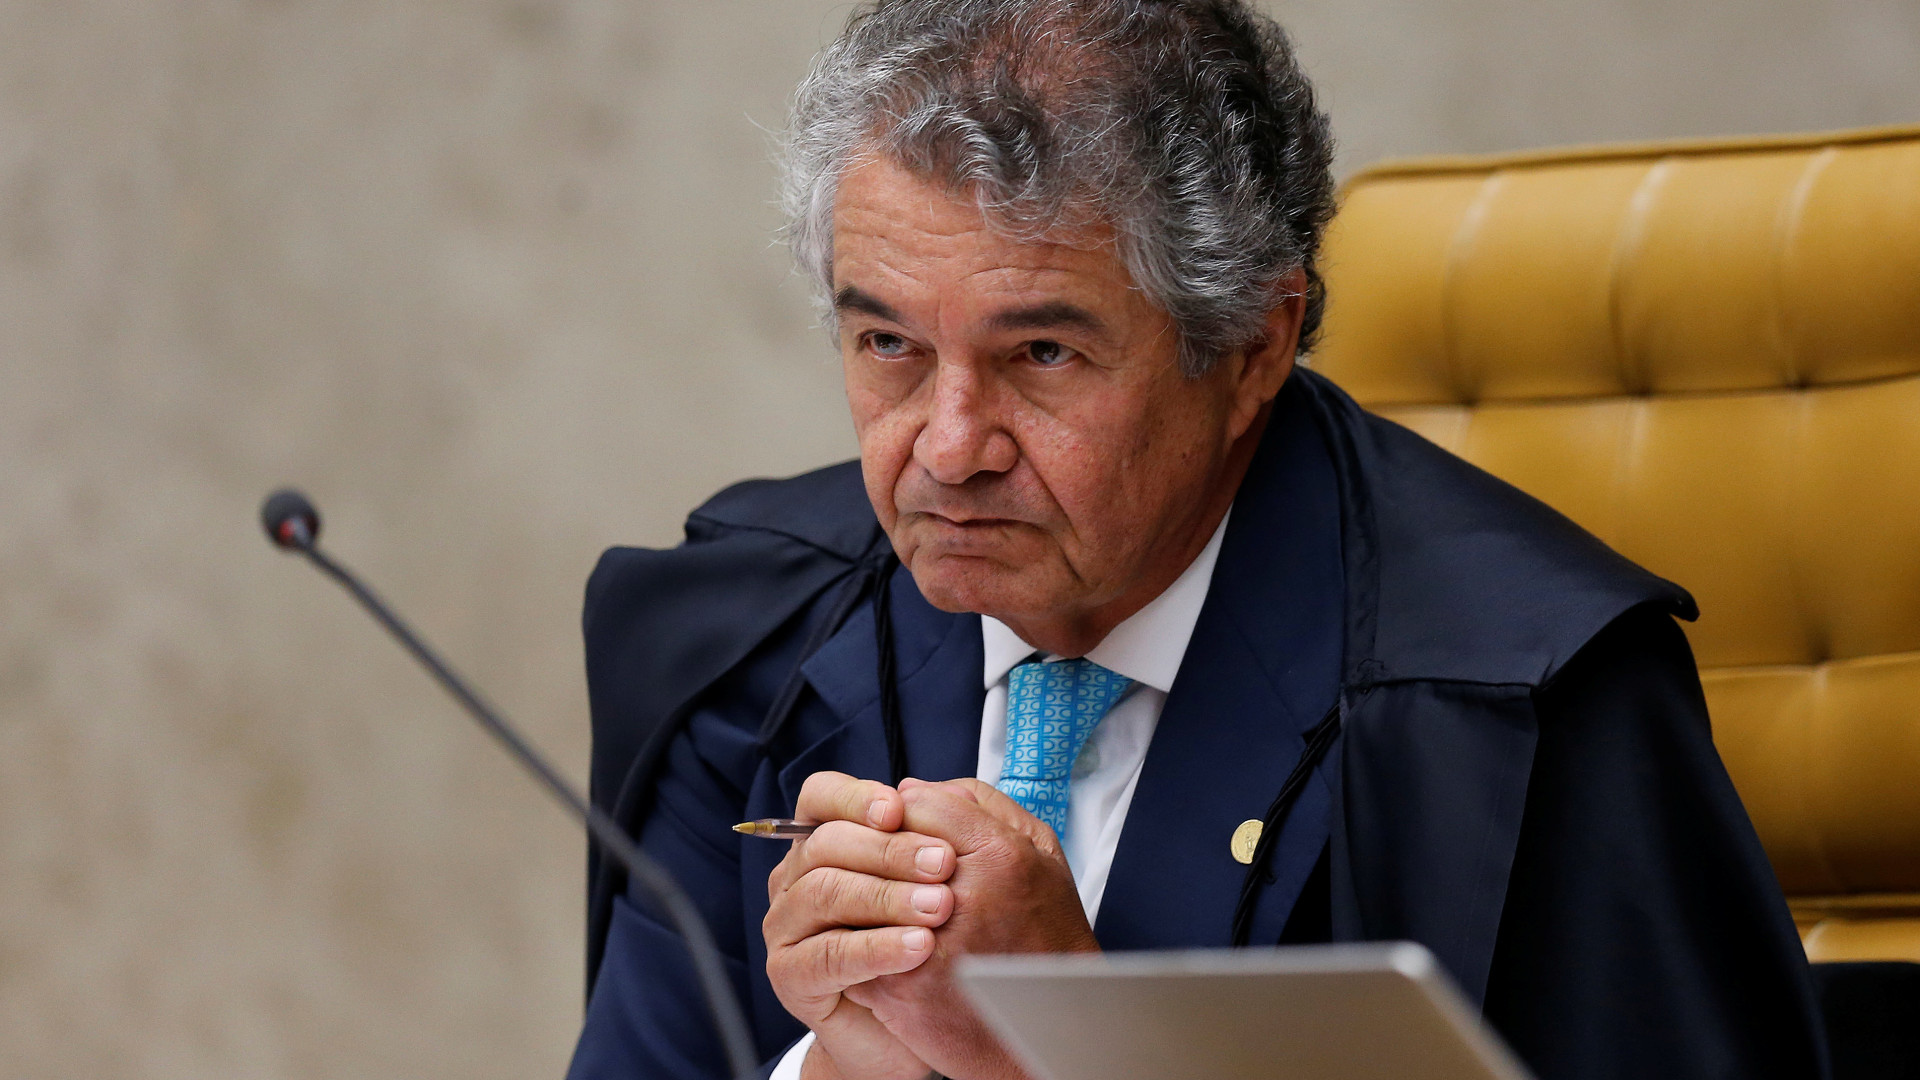 Adiado depoimento de Bolsonaro no inquérito sobre interferência na PF